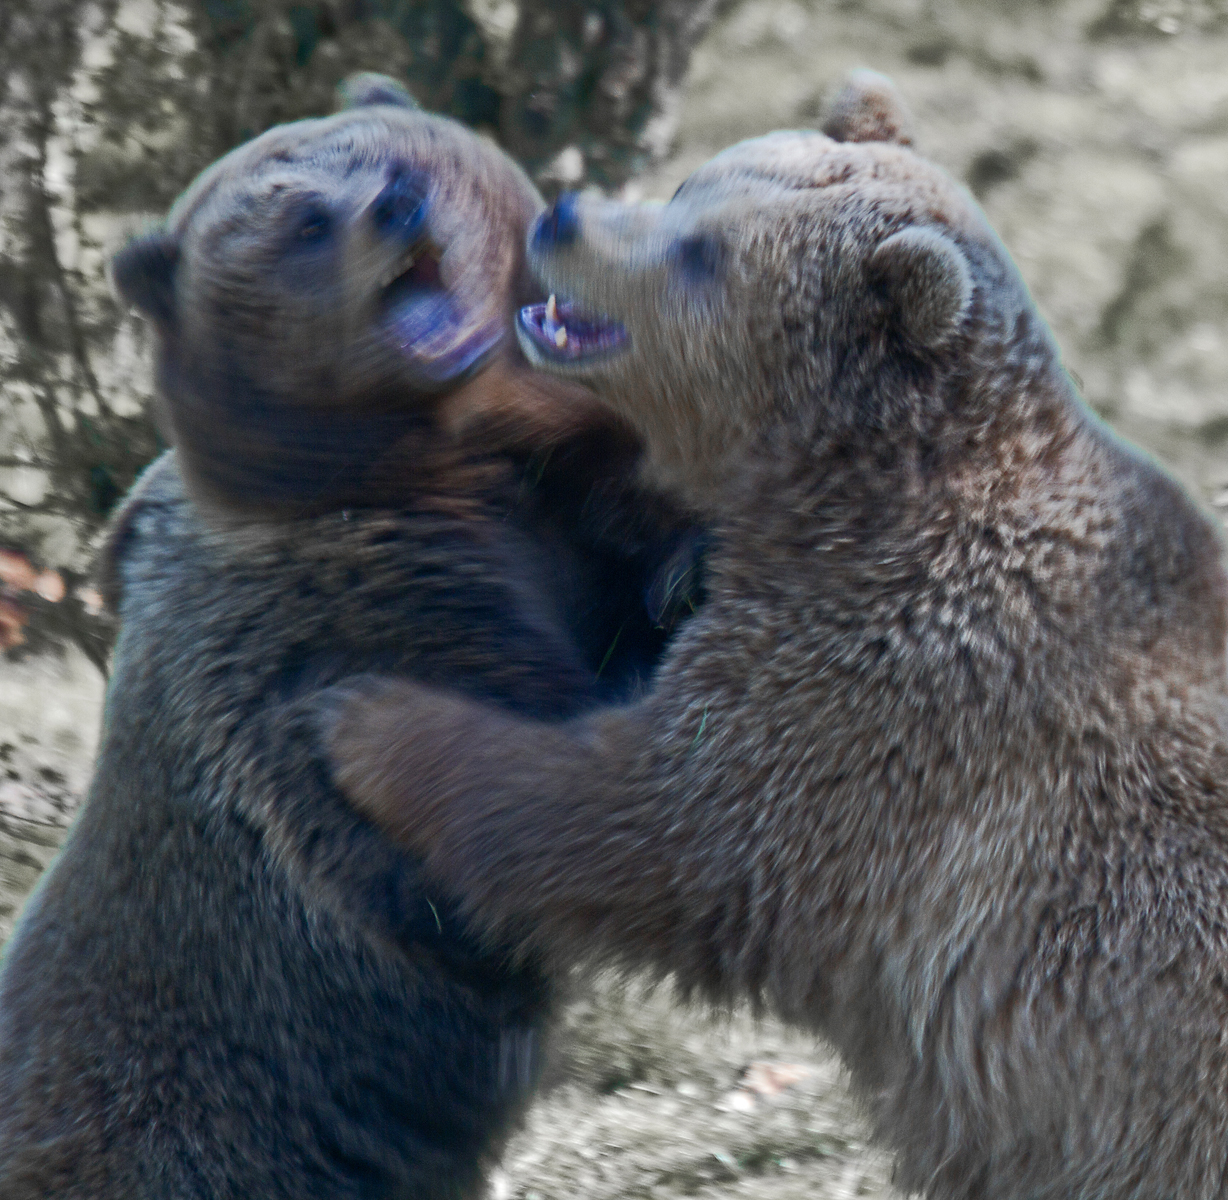 european-bears-in-motion-by-alan-goldby